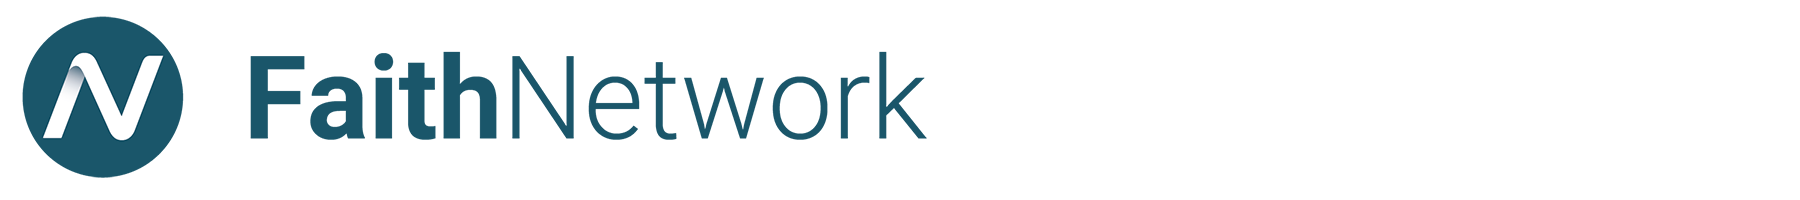 Faith Network logo